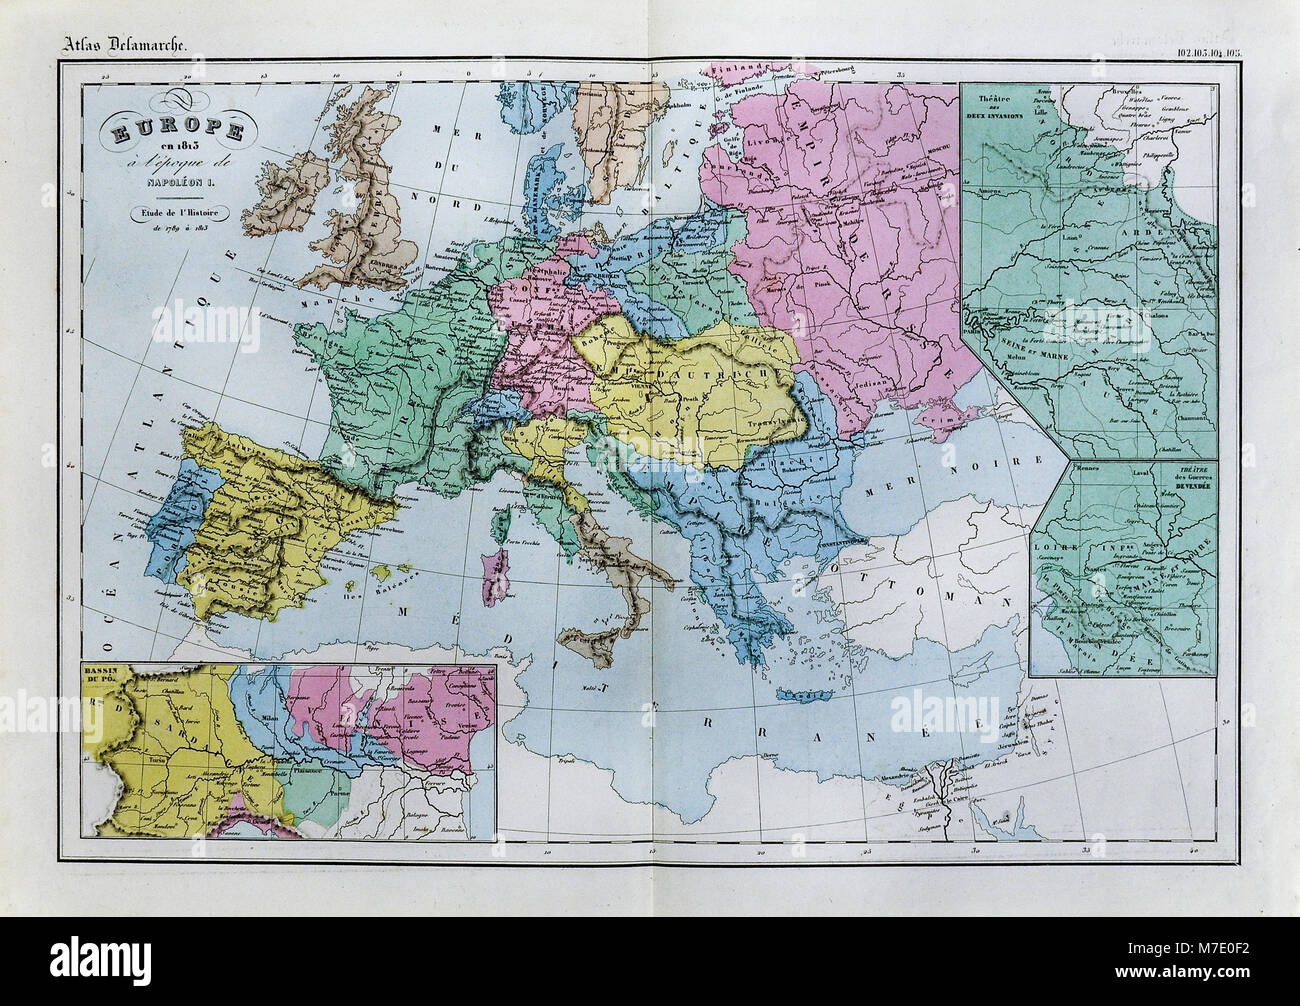 Delamarche 1858 Carte historique de l'Europe en 1813 pendant le règne de Napoléon I de France Banque D'Images